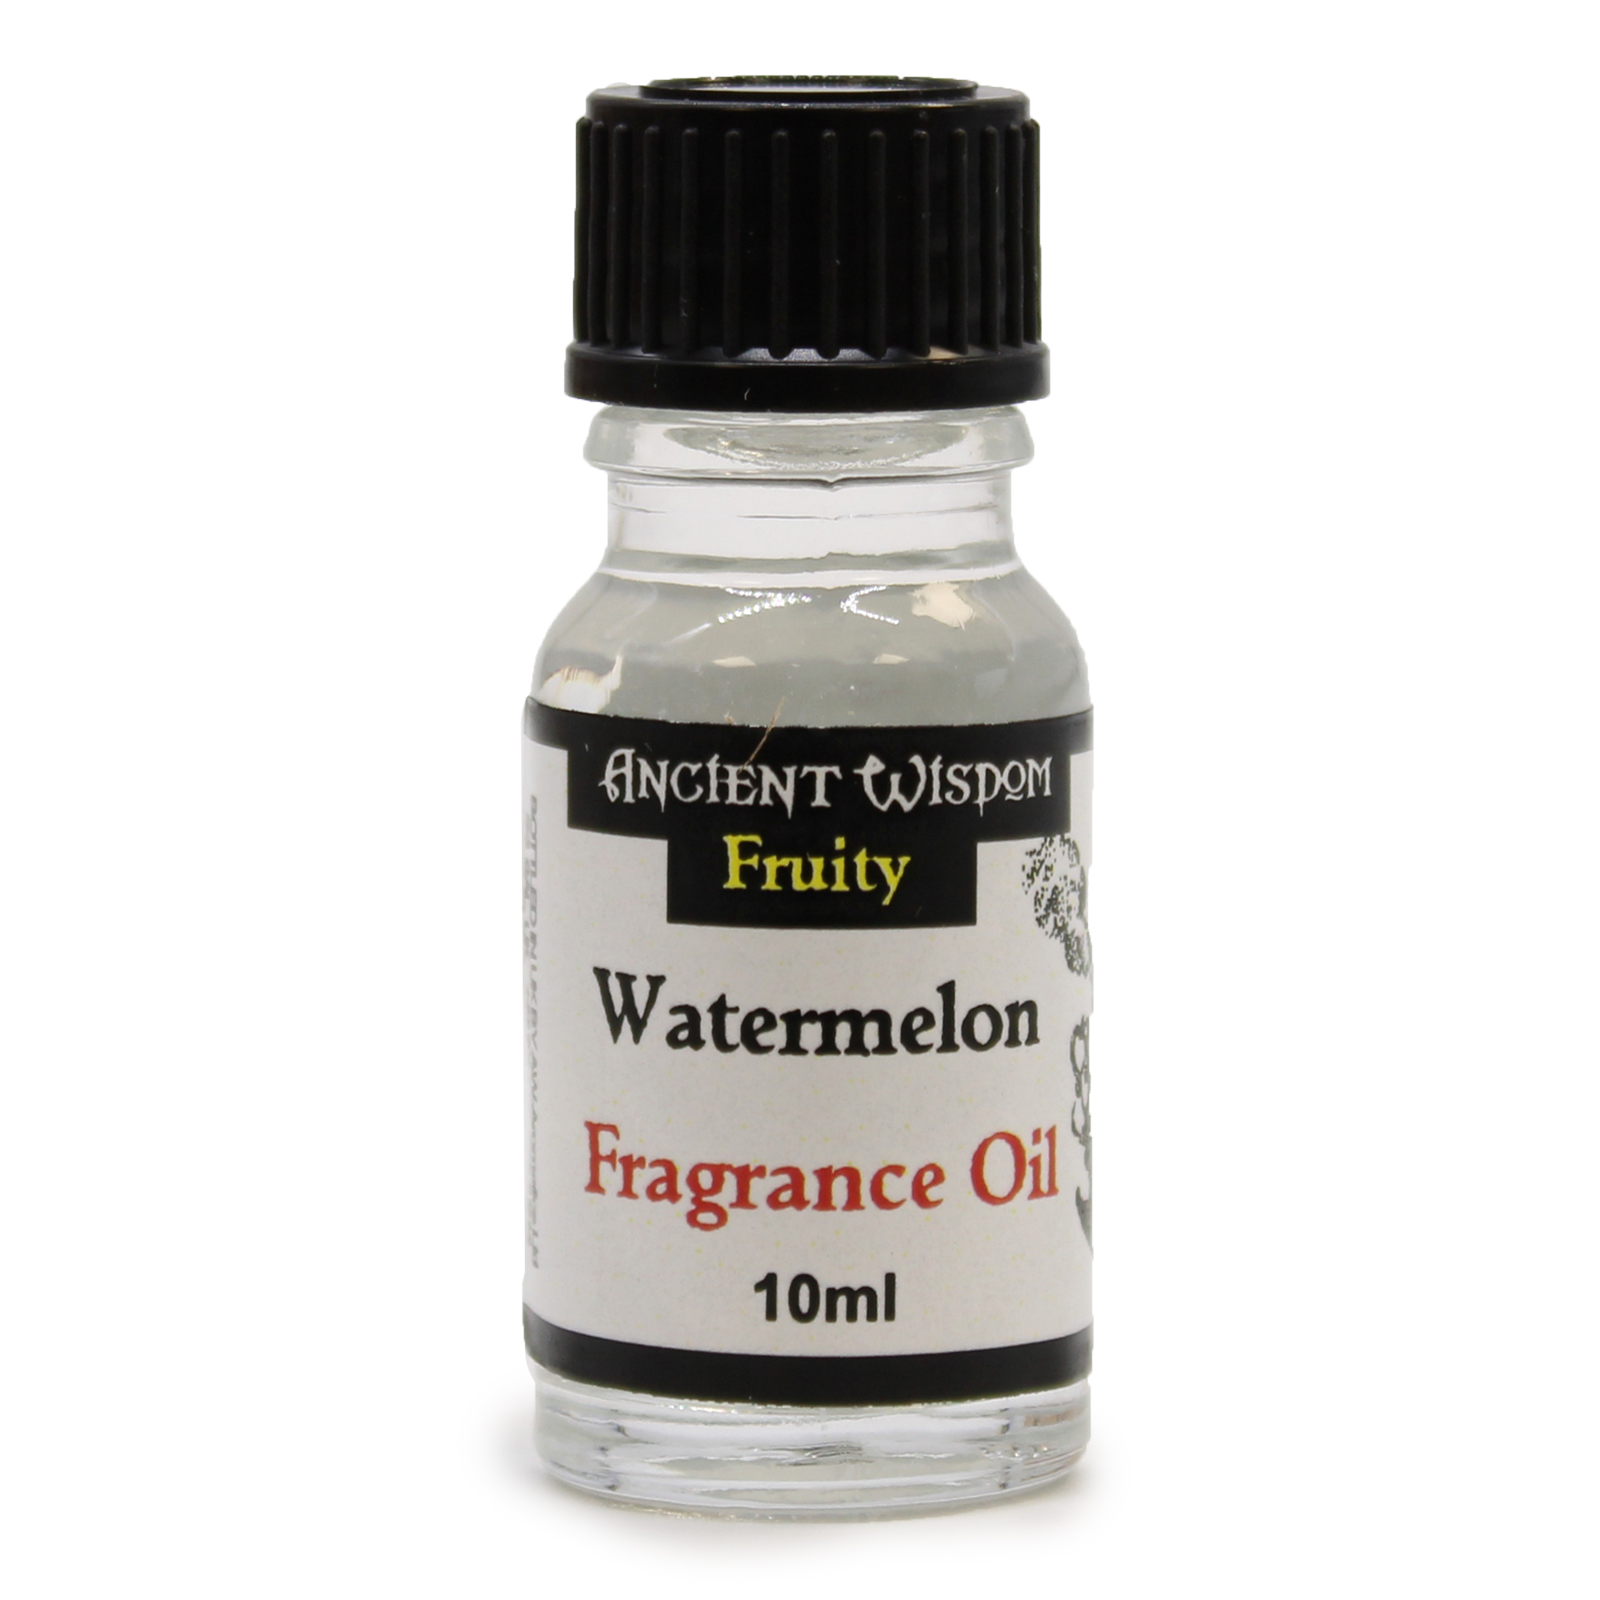 2 x 10ml Watermelon Fragrance Oil Bottles